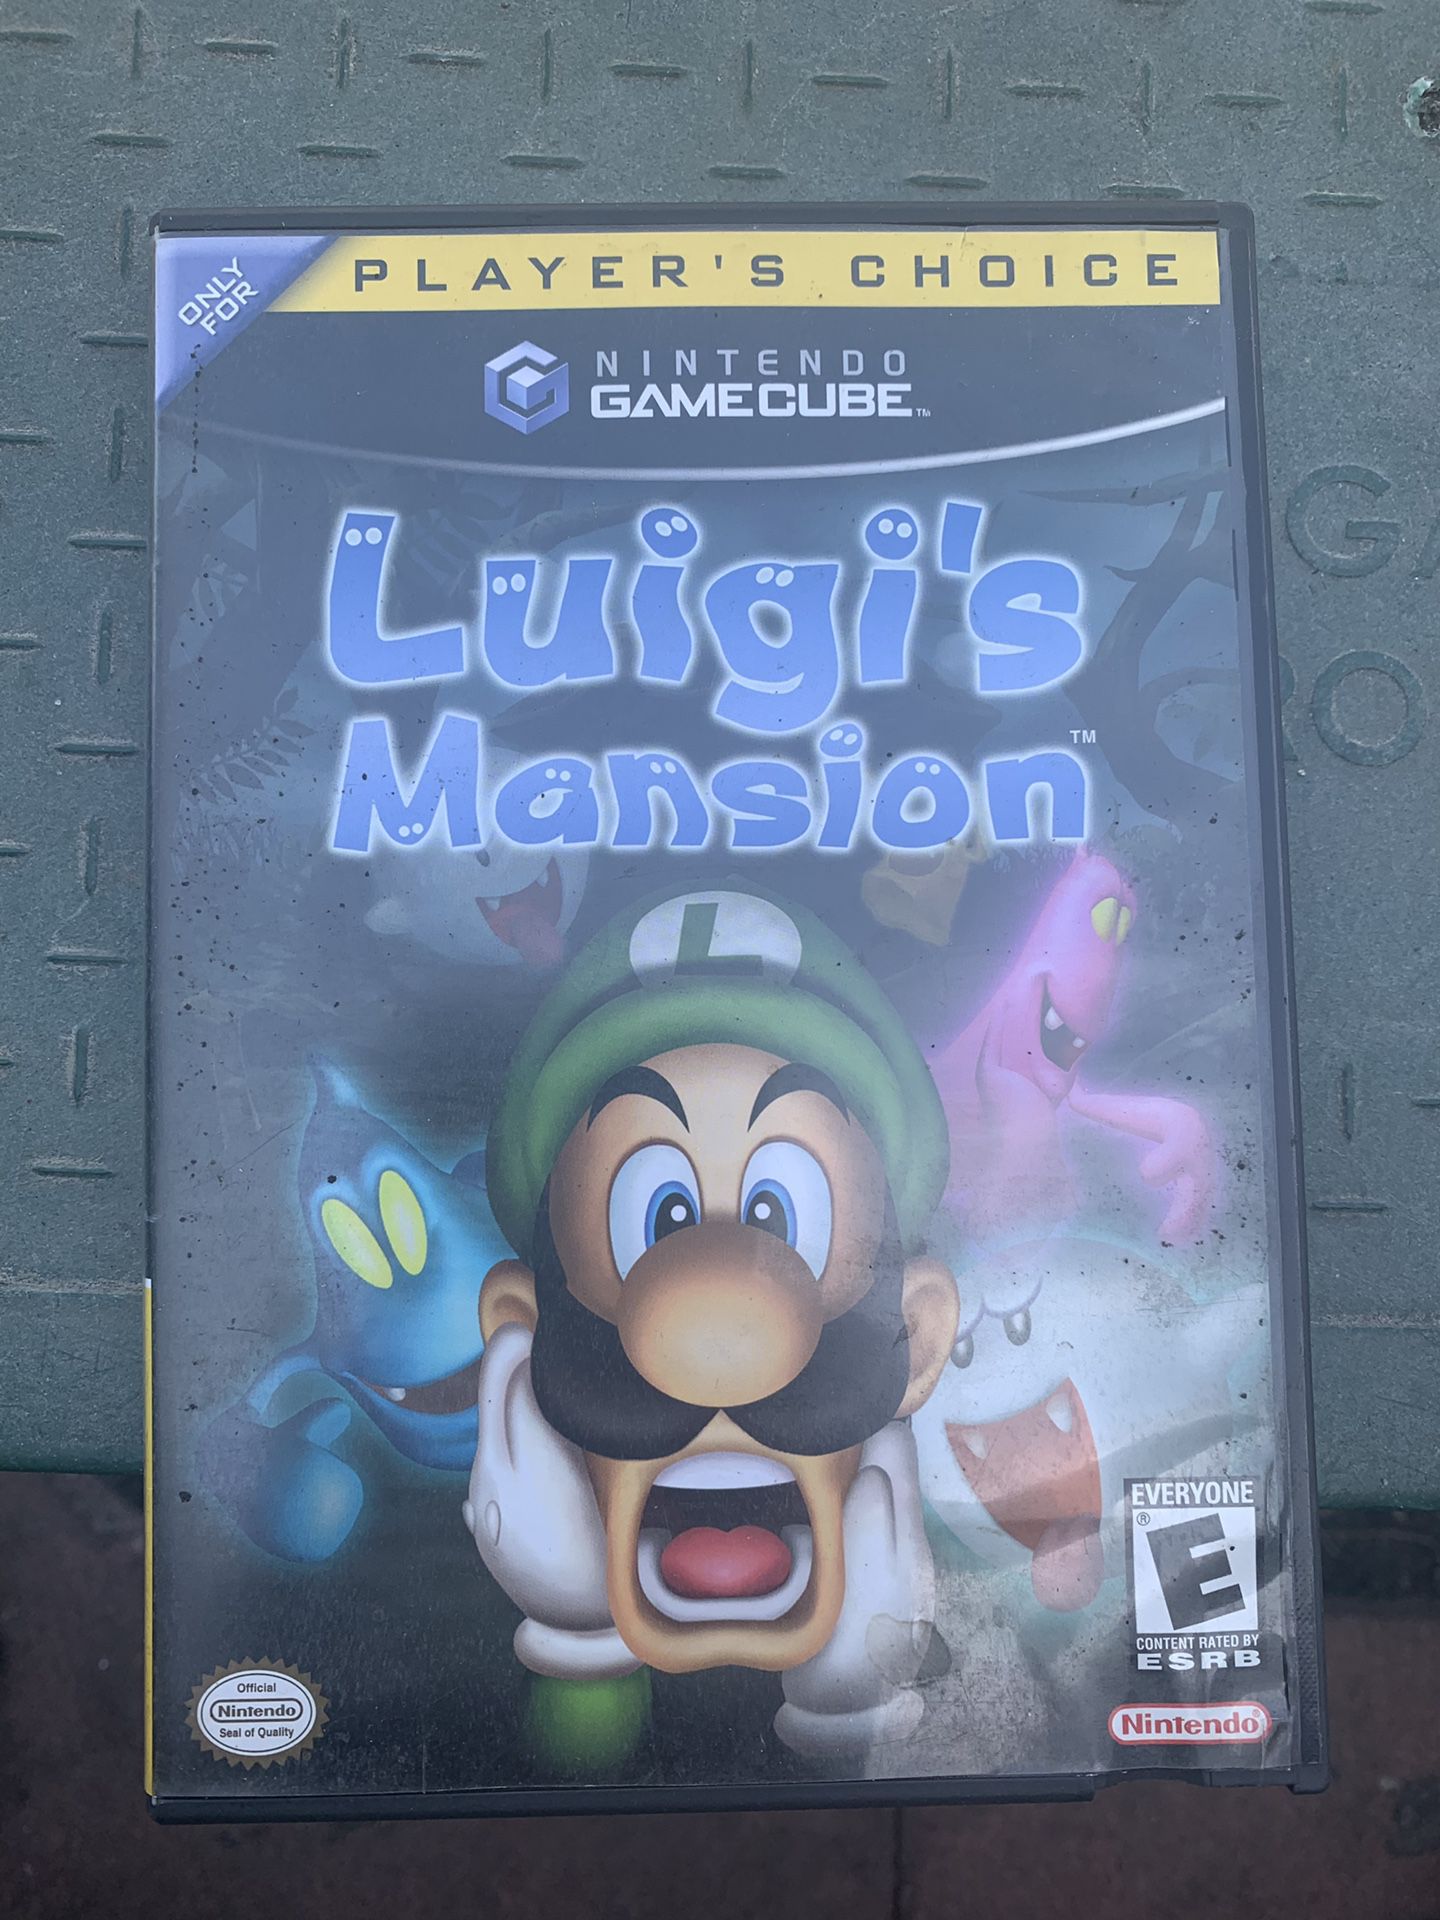 Luigi’s mansion game cube